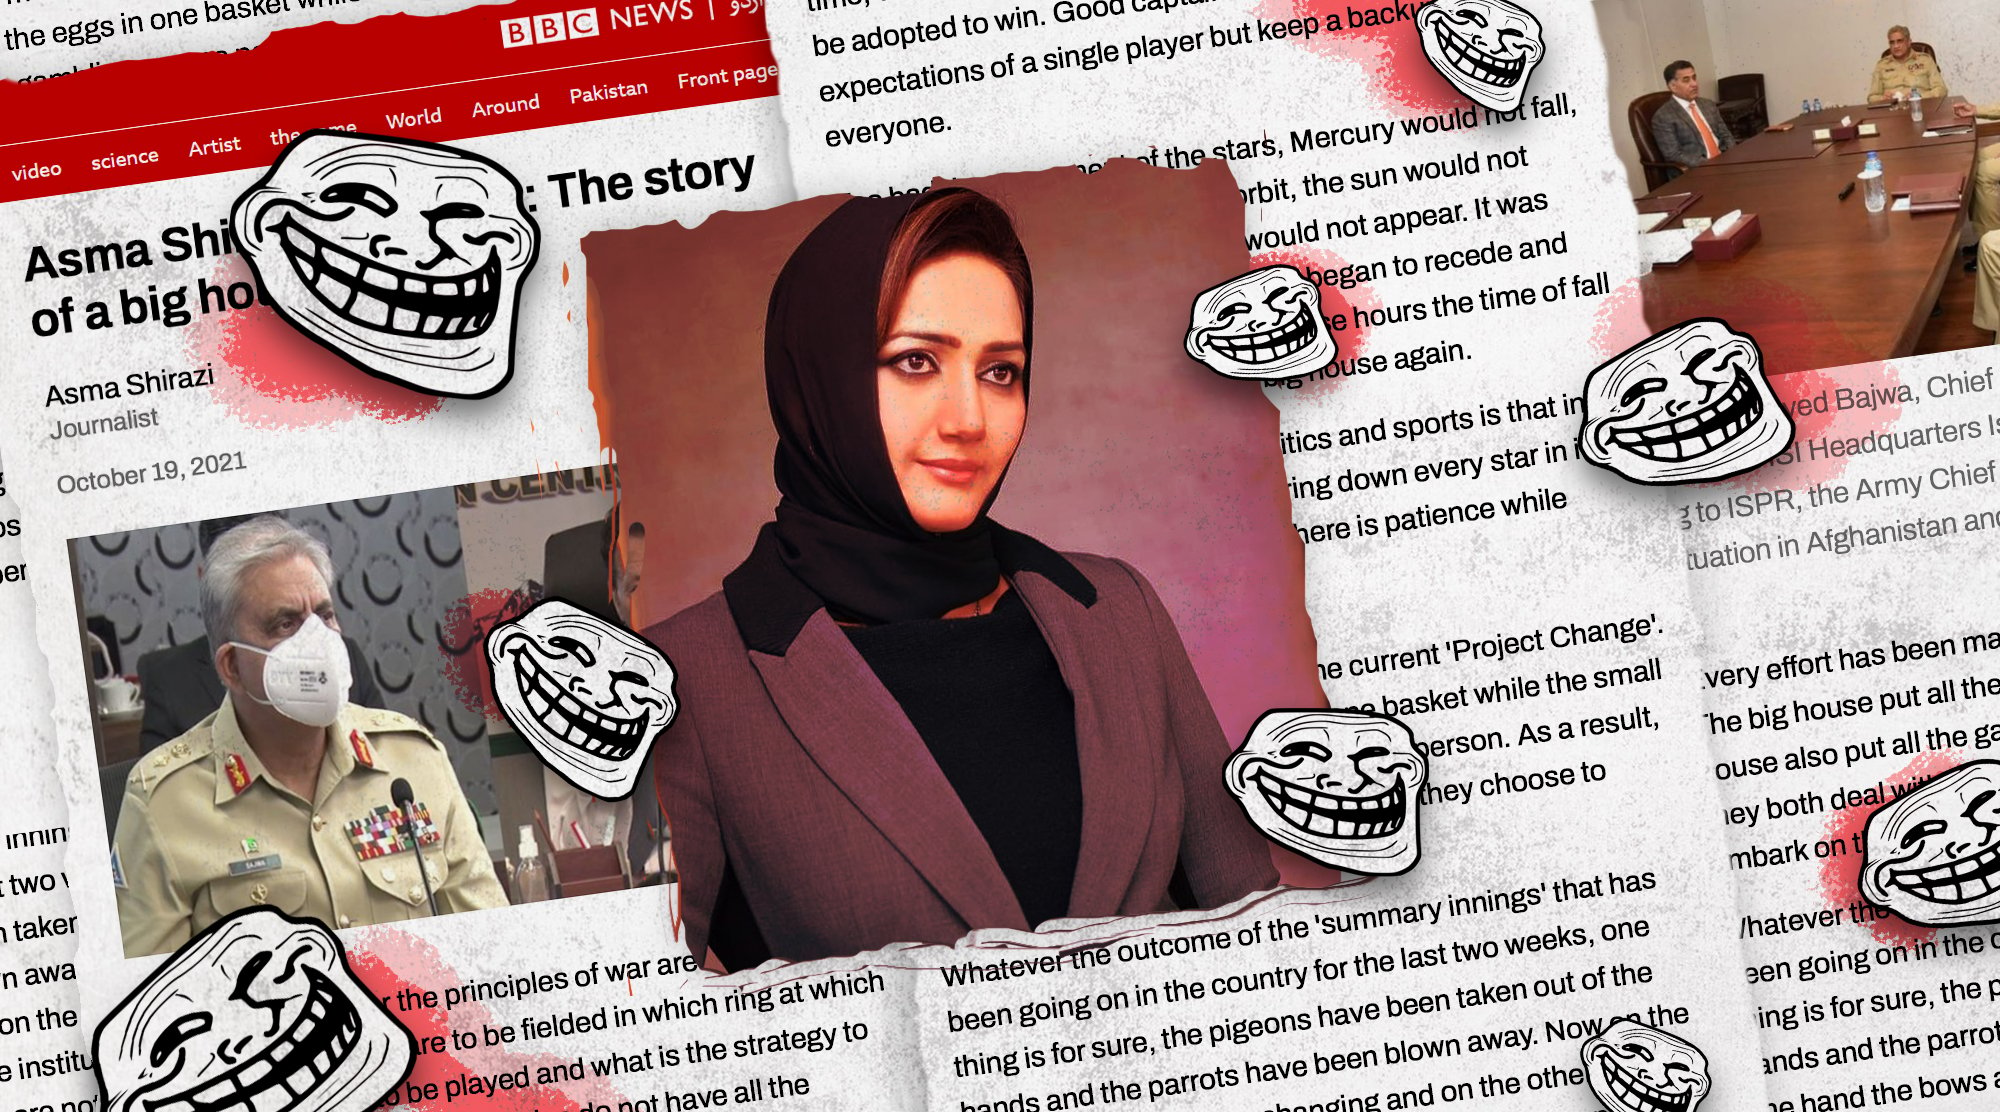 Women Journalists in Pakistan Fight Back Against Genderd Trolling